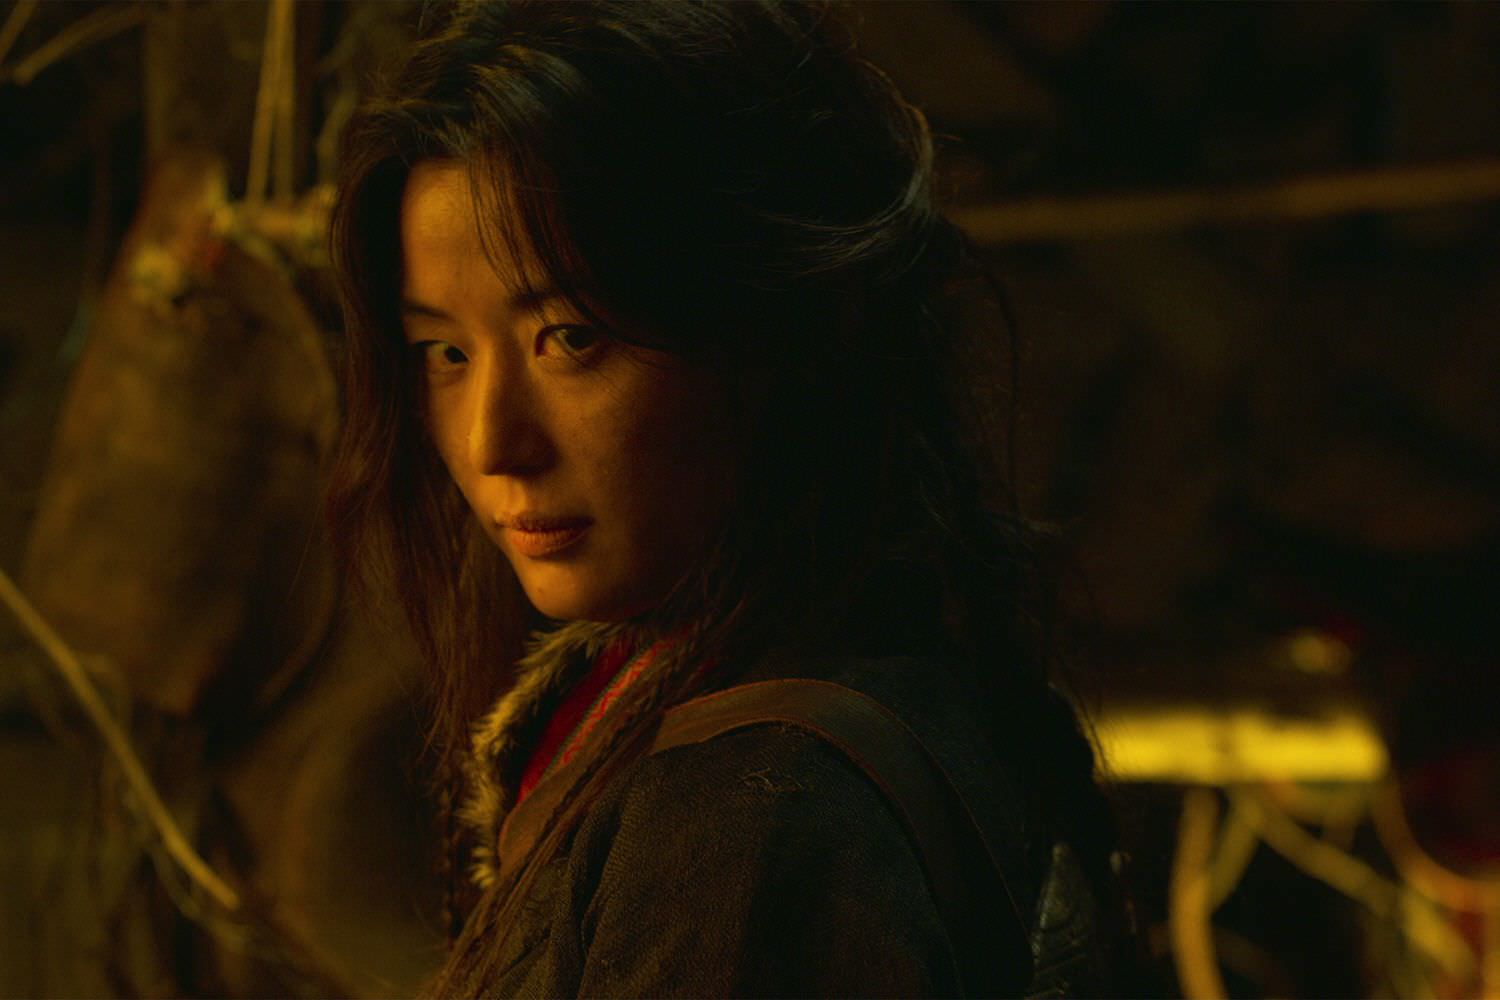 جون جی-هیون در نقش آشین در سریال Kingdom: Ashin of the North